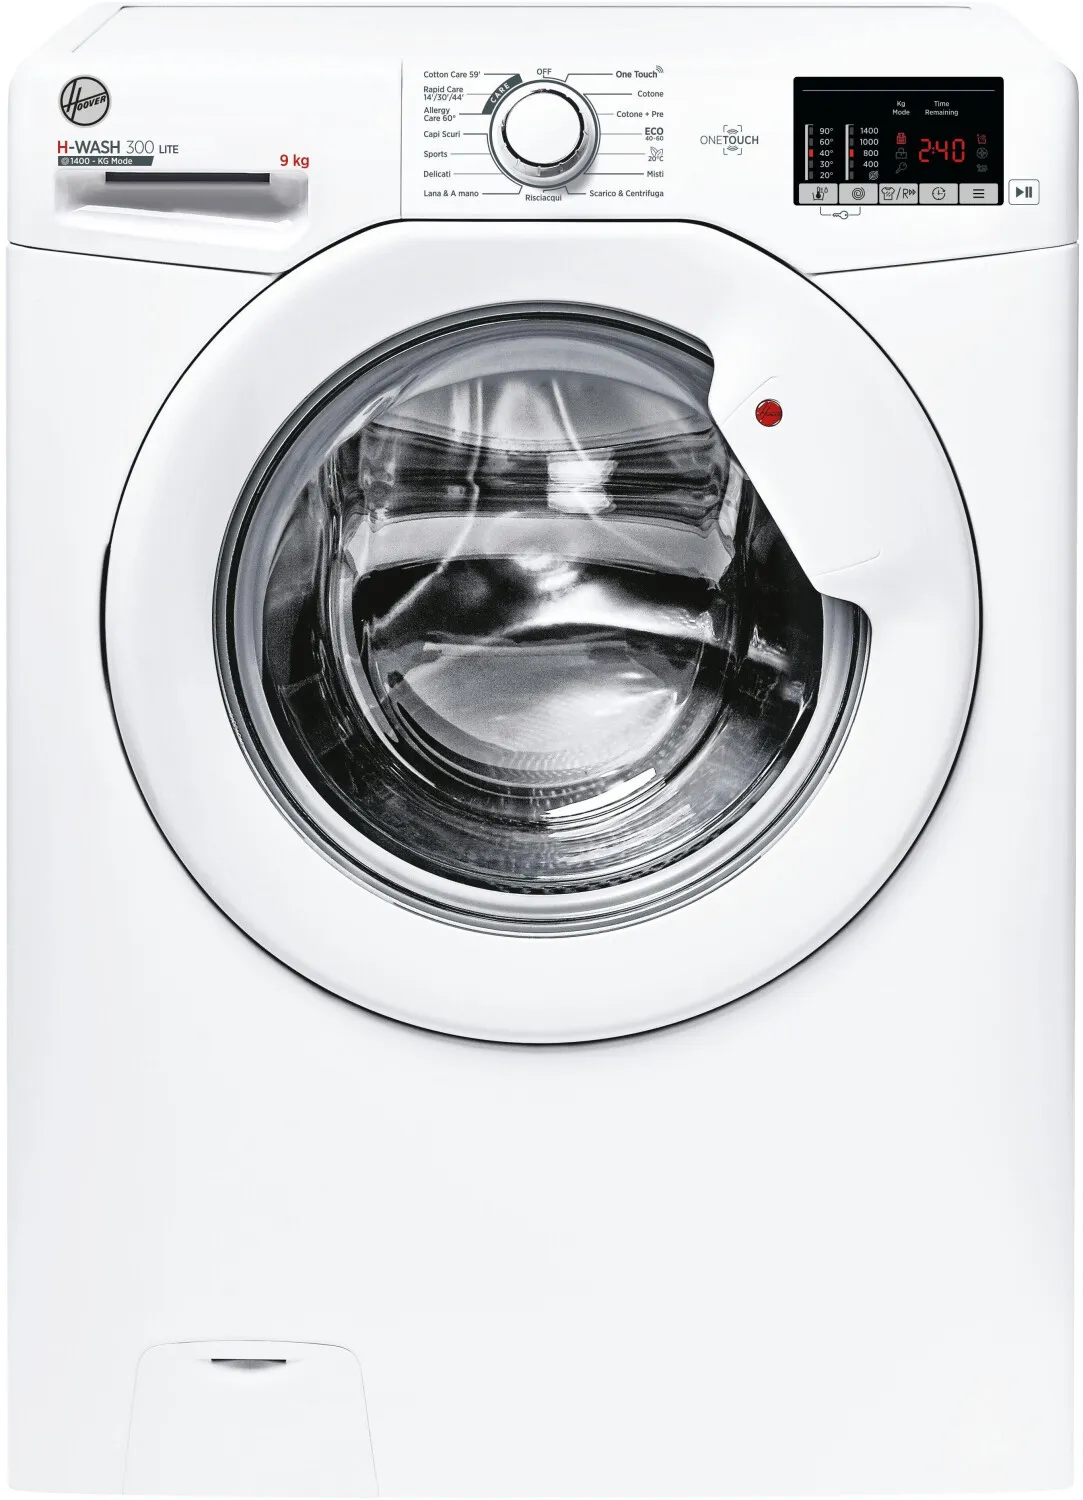  H-WASH 300 LITE H3W 492DE-11 lavatrice Caricamento frontale 9 kg 1400 Giri/min Bianco